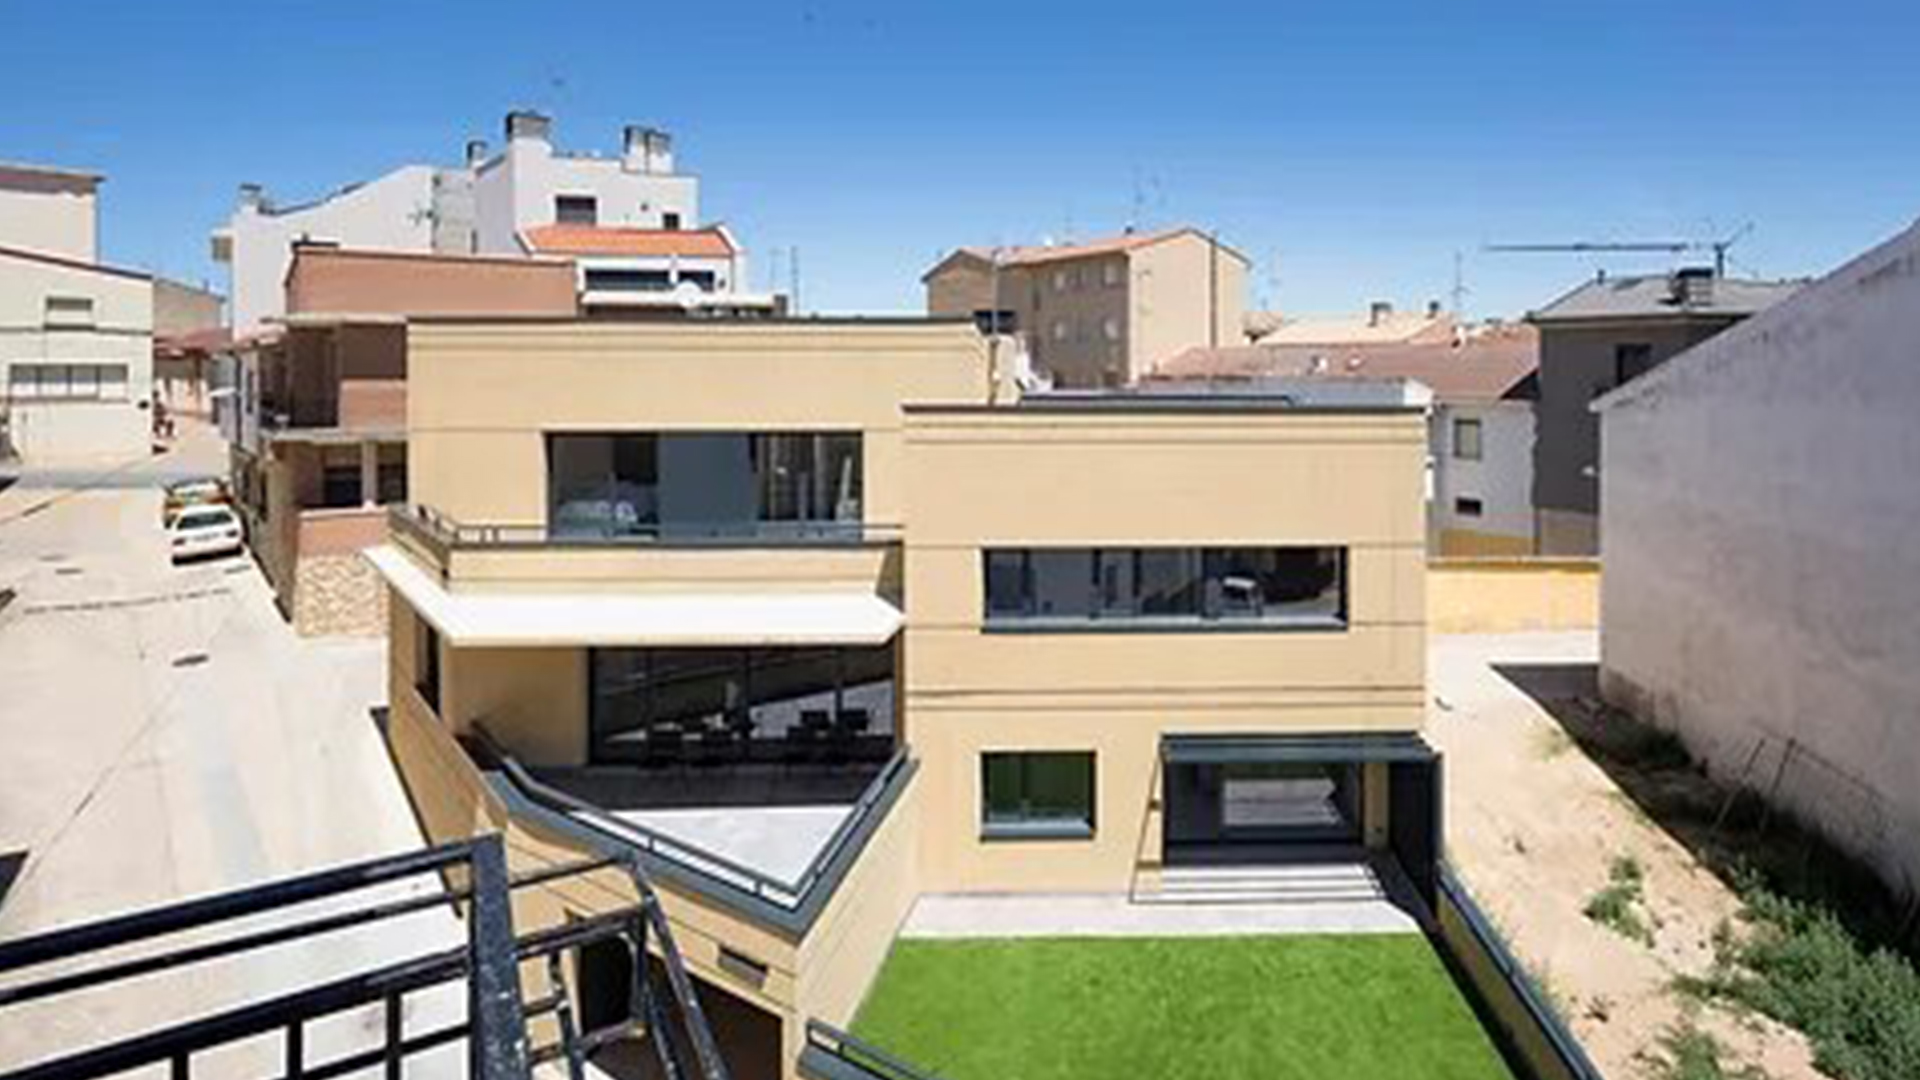 Arquitecto para la construcción de vivienda unifamiliar en Lerin (Navarra)